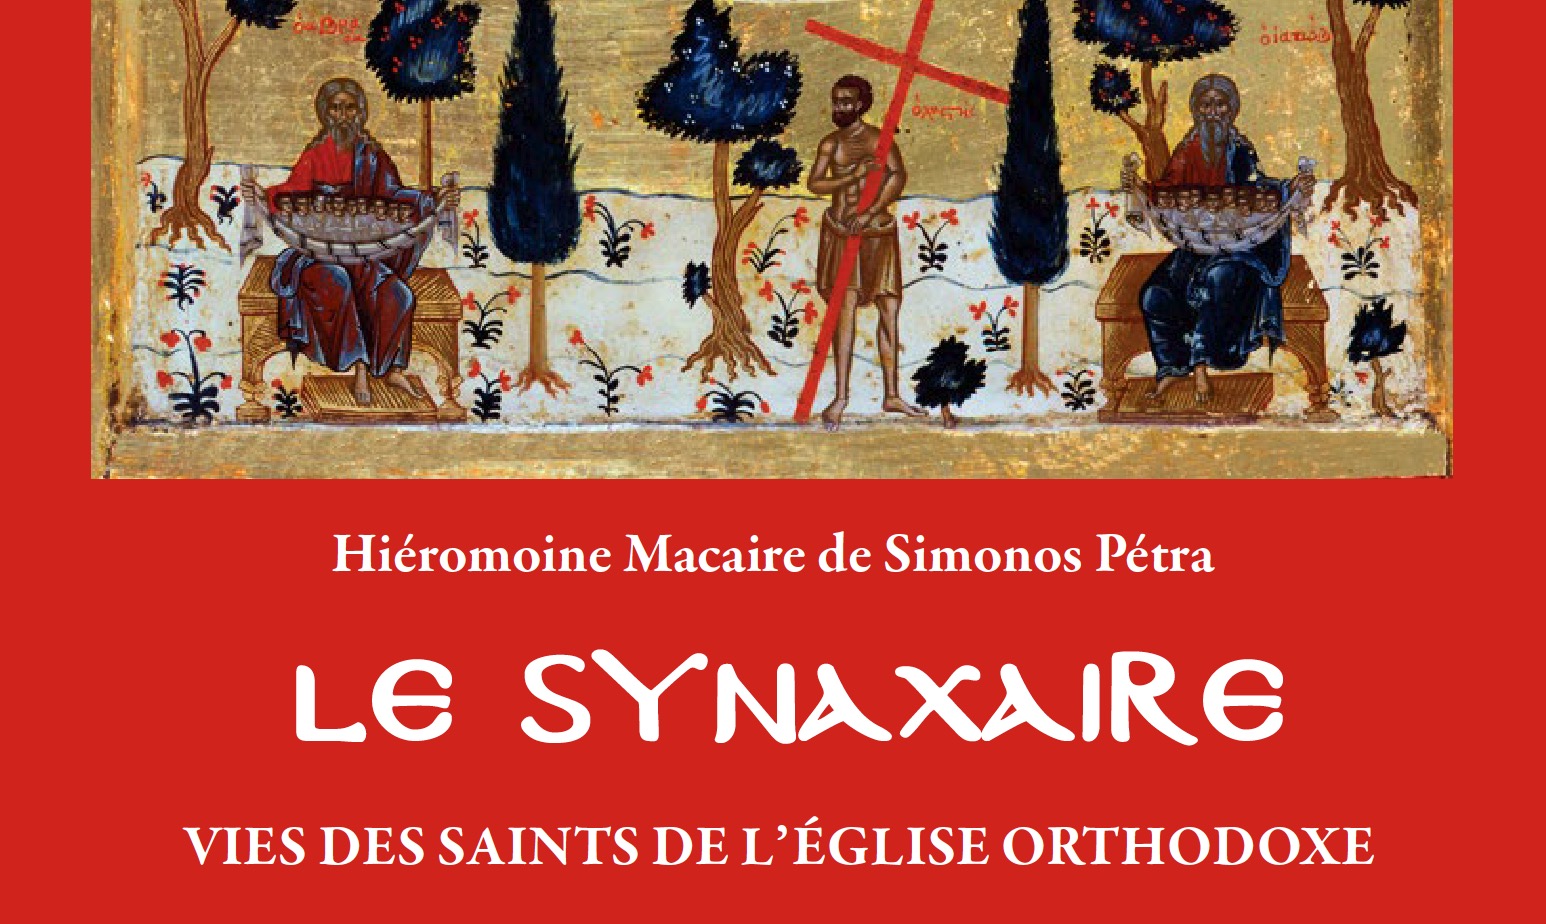 Vient de paraître aux Éditions apostolia : « le synaxaire » par le hiéromoine macaire de simonos pétra